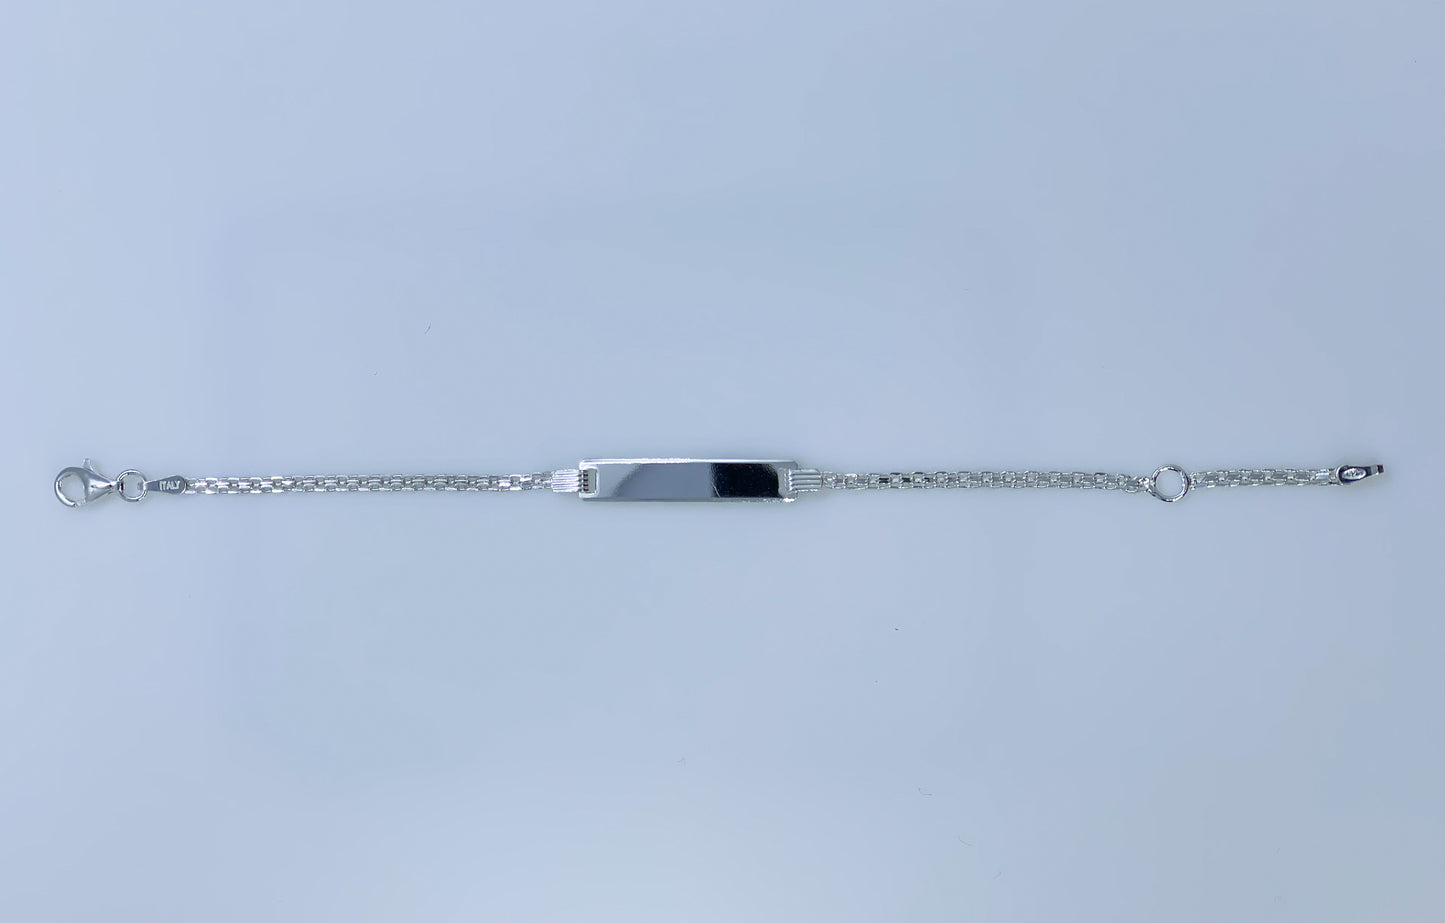 Silver Identity Bracelet 14-16cm - John Ross Jewellers